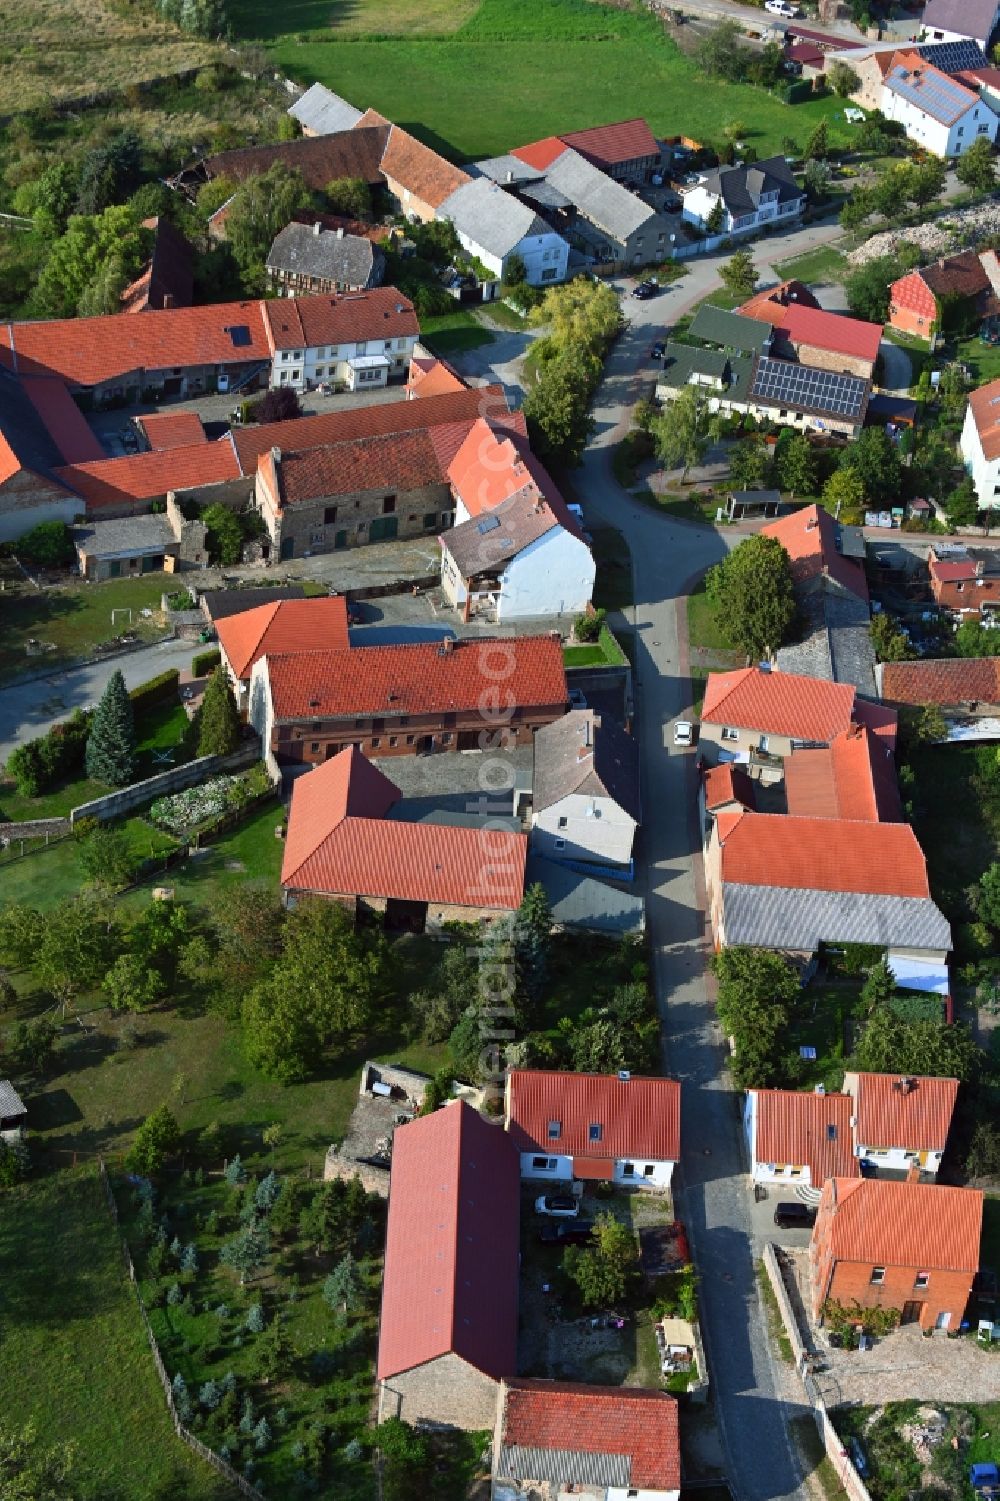 Aerial image Klinze - Village view in Klinze in the state Saxony-Anhalt, Germany